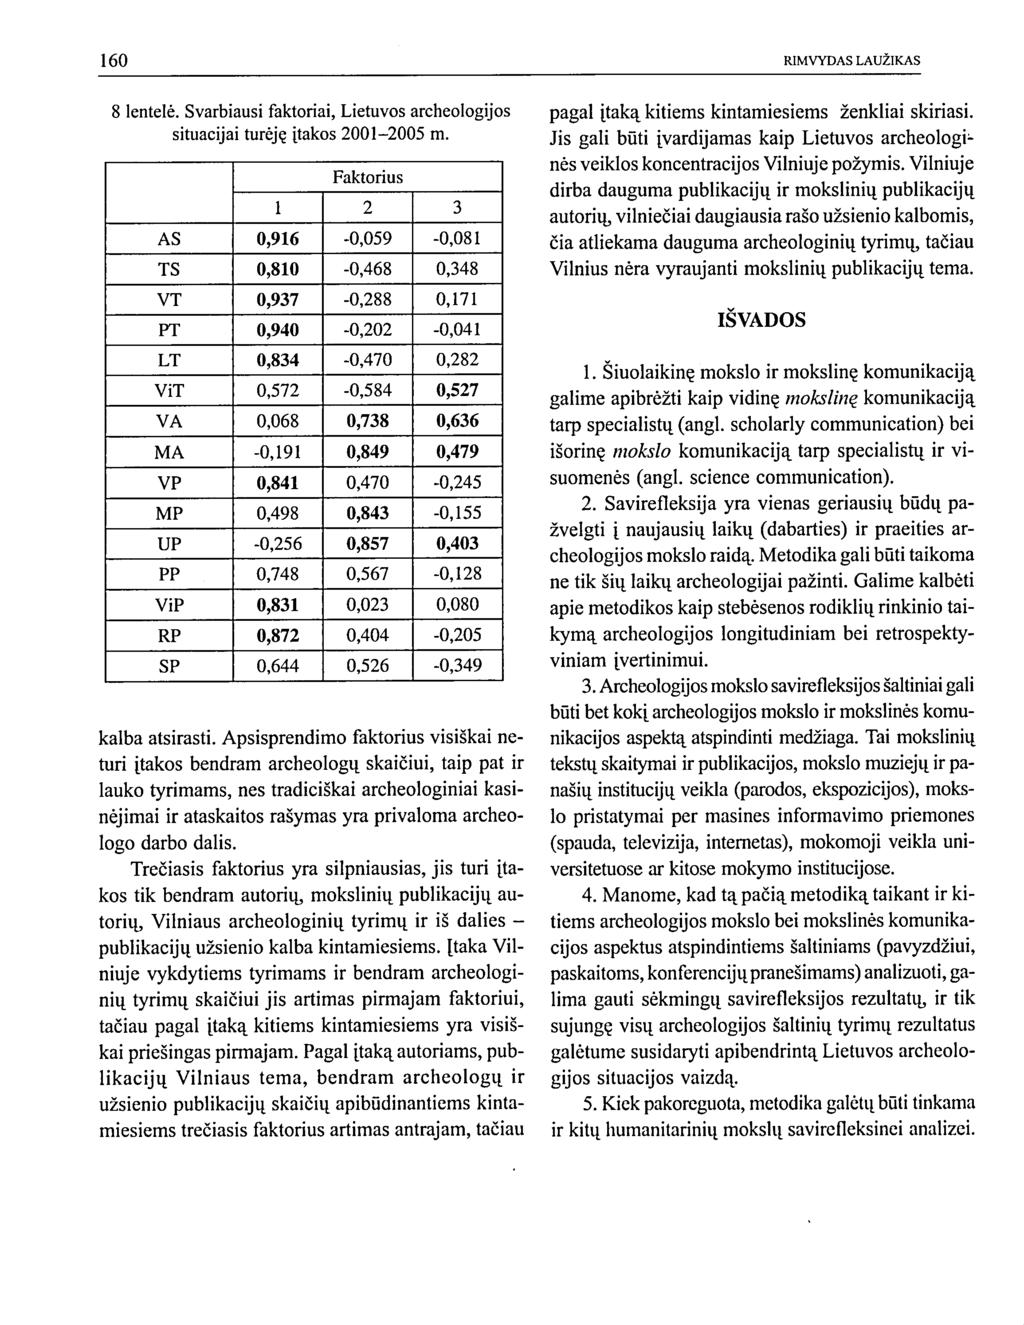 8 lentelė. Svarbiausi faktoriai, Lietuvos archeologijos situacijai turėję įtakos 2001-2005 m.